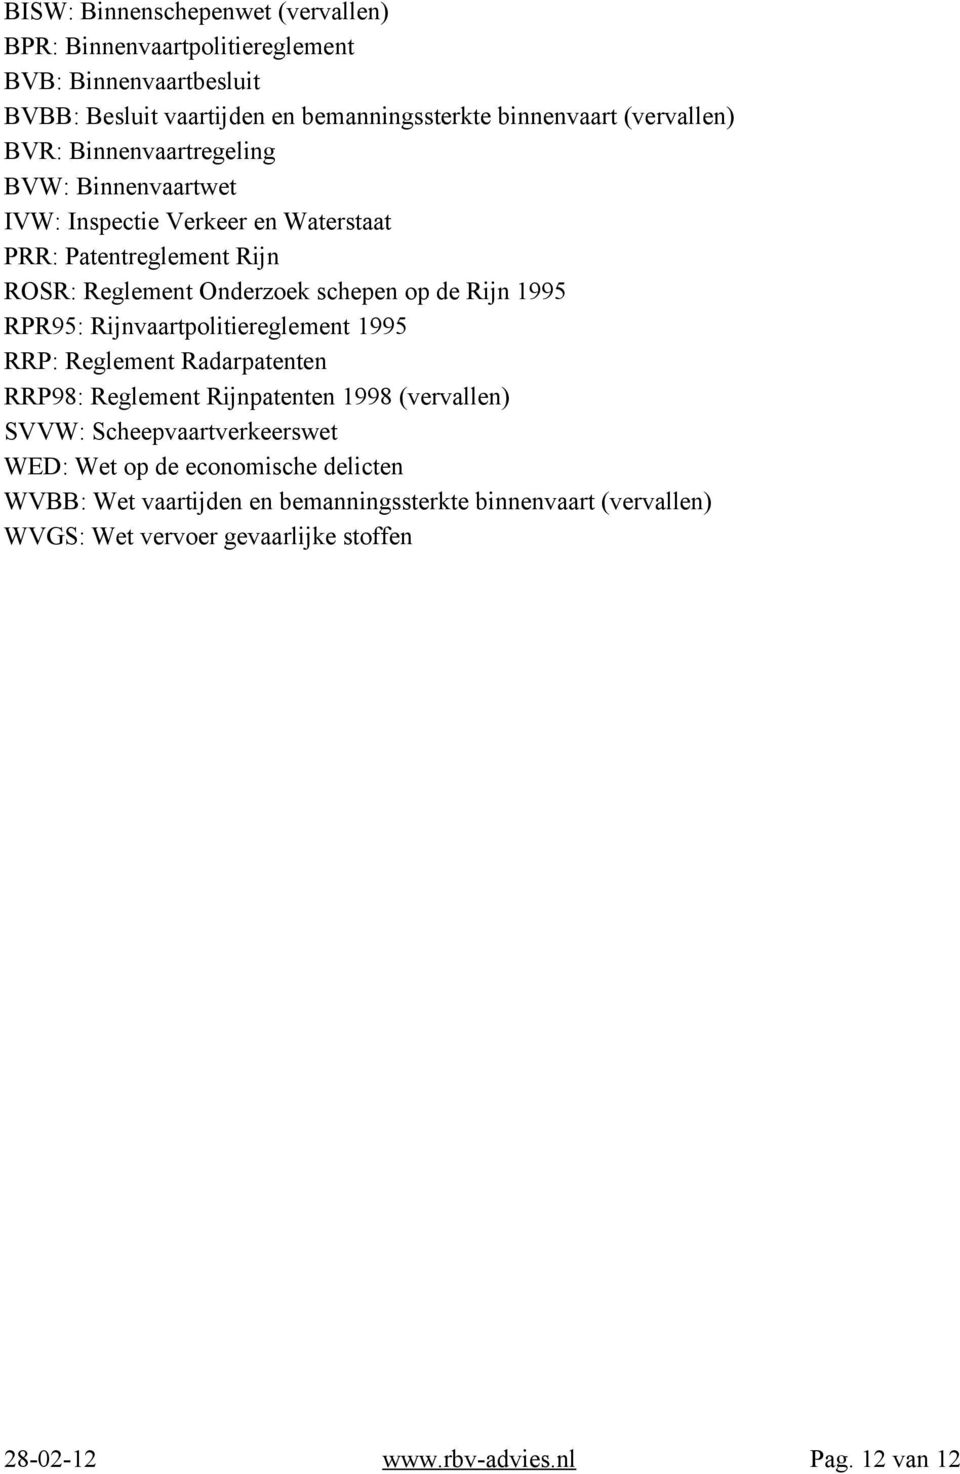 Rijn 1995 RPR95: Rijnvaartpolitiereglement 1995 RRP: Reglement Radarpatenten RRP98: Reglement Rijnpatenten 1998 (vervallen) SVVW: Scheepvaartverkeerswet WED: